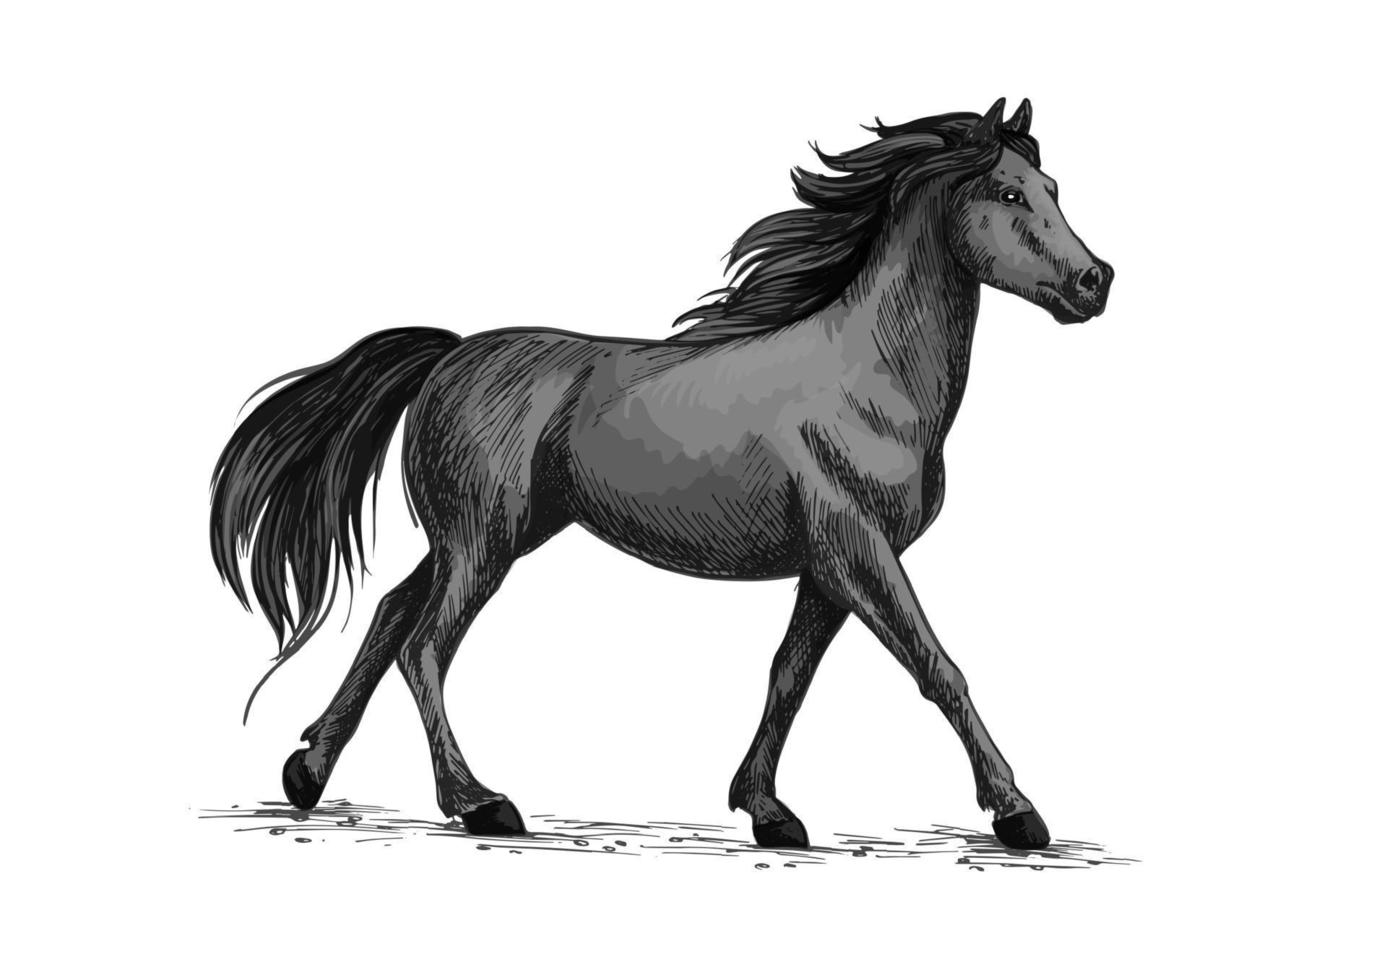 häst promenader eller springer, svart mustang vektor skiss